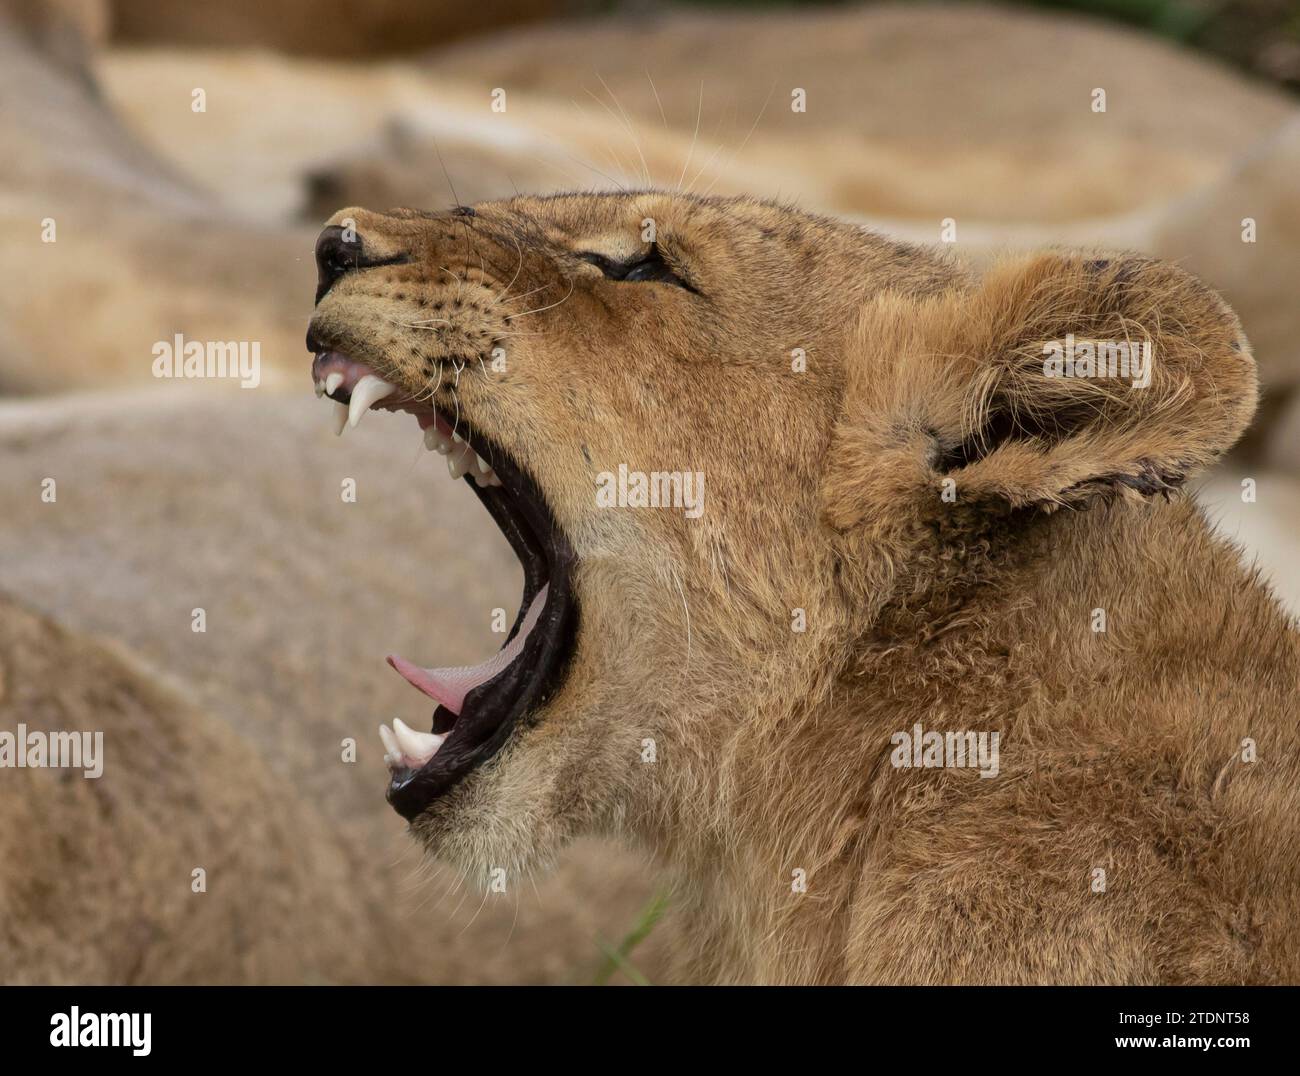 piccolo cucciolo di leone che riposa in una luce solare dorata, apre la bocca e sbadiglia mostrando denti e lingua, occhi chiusi bocca spalancata. Foto Stock